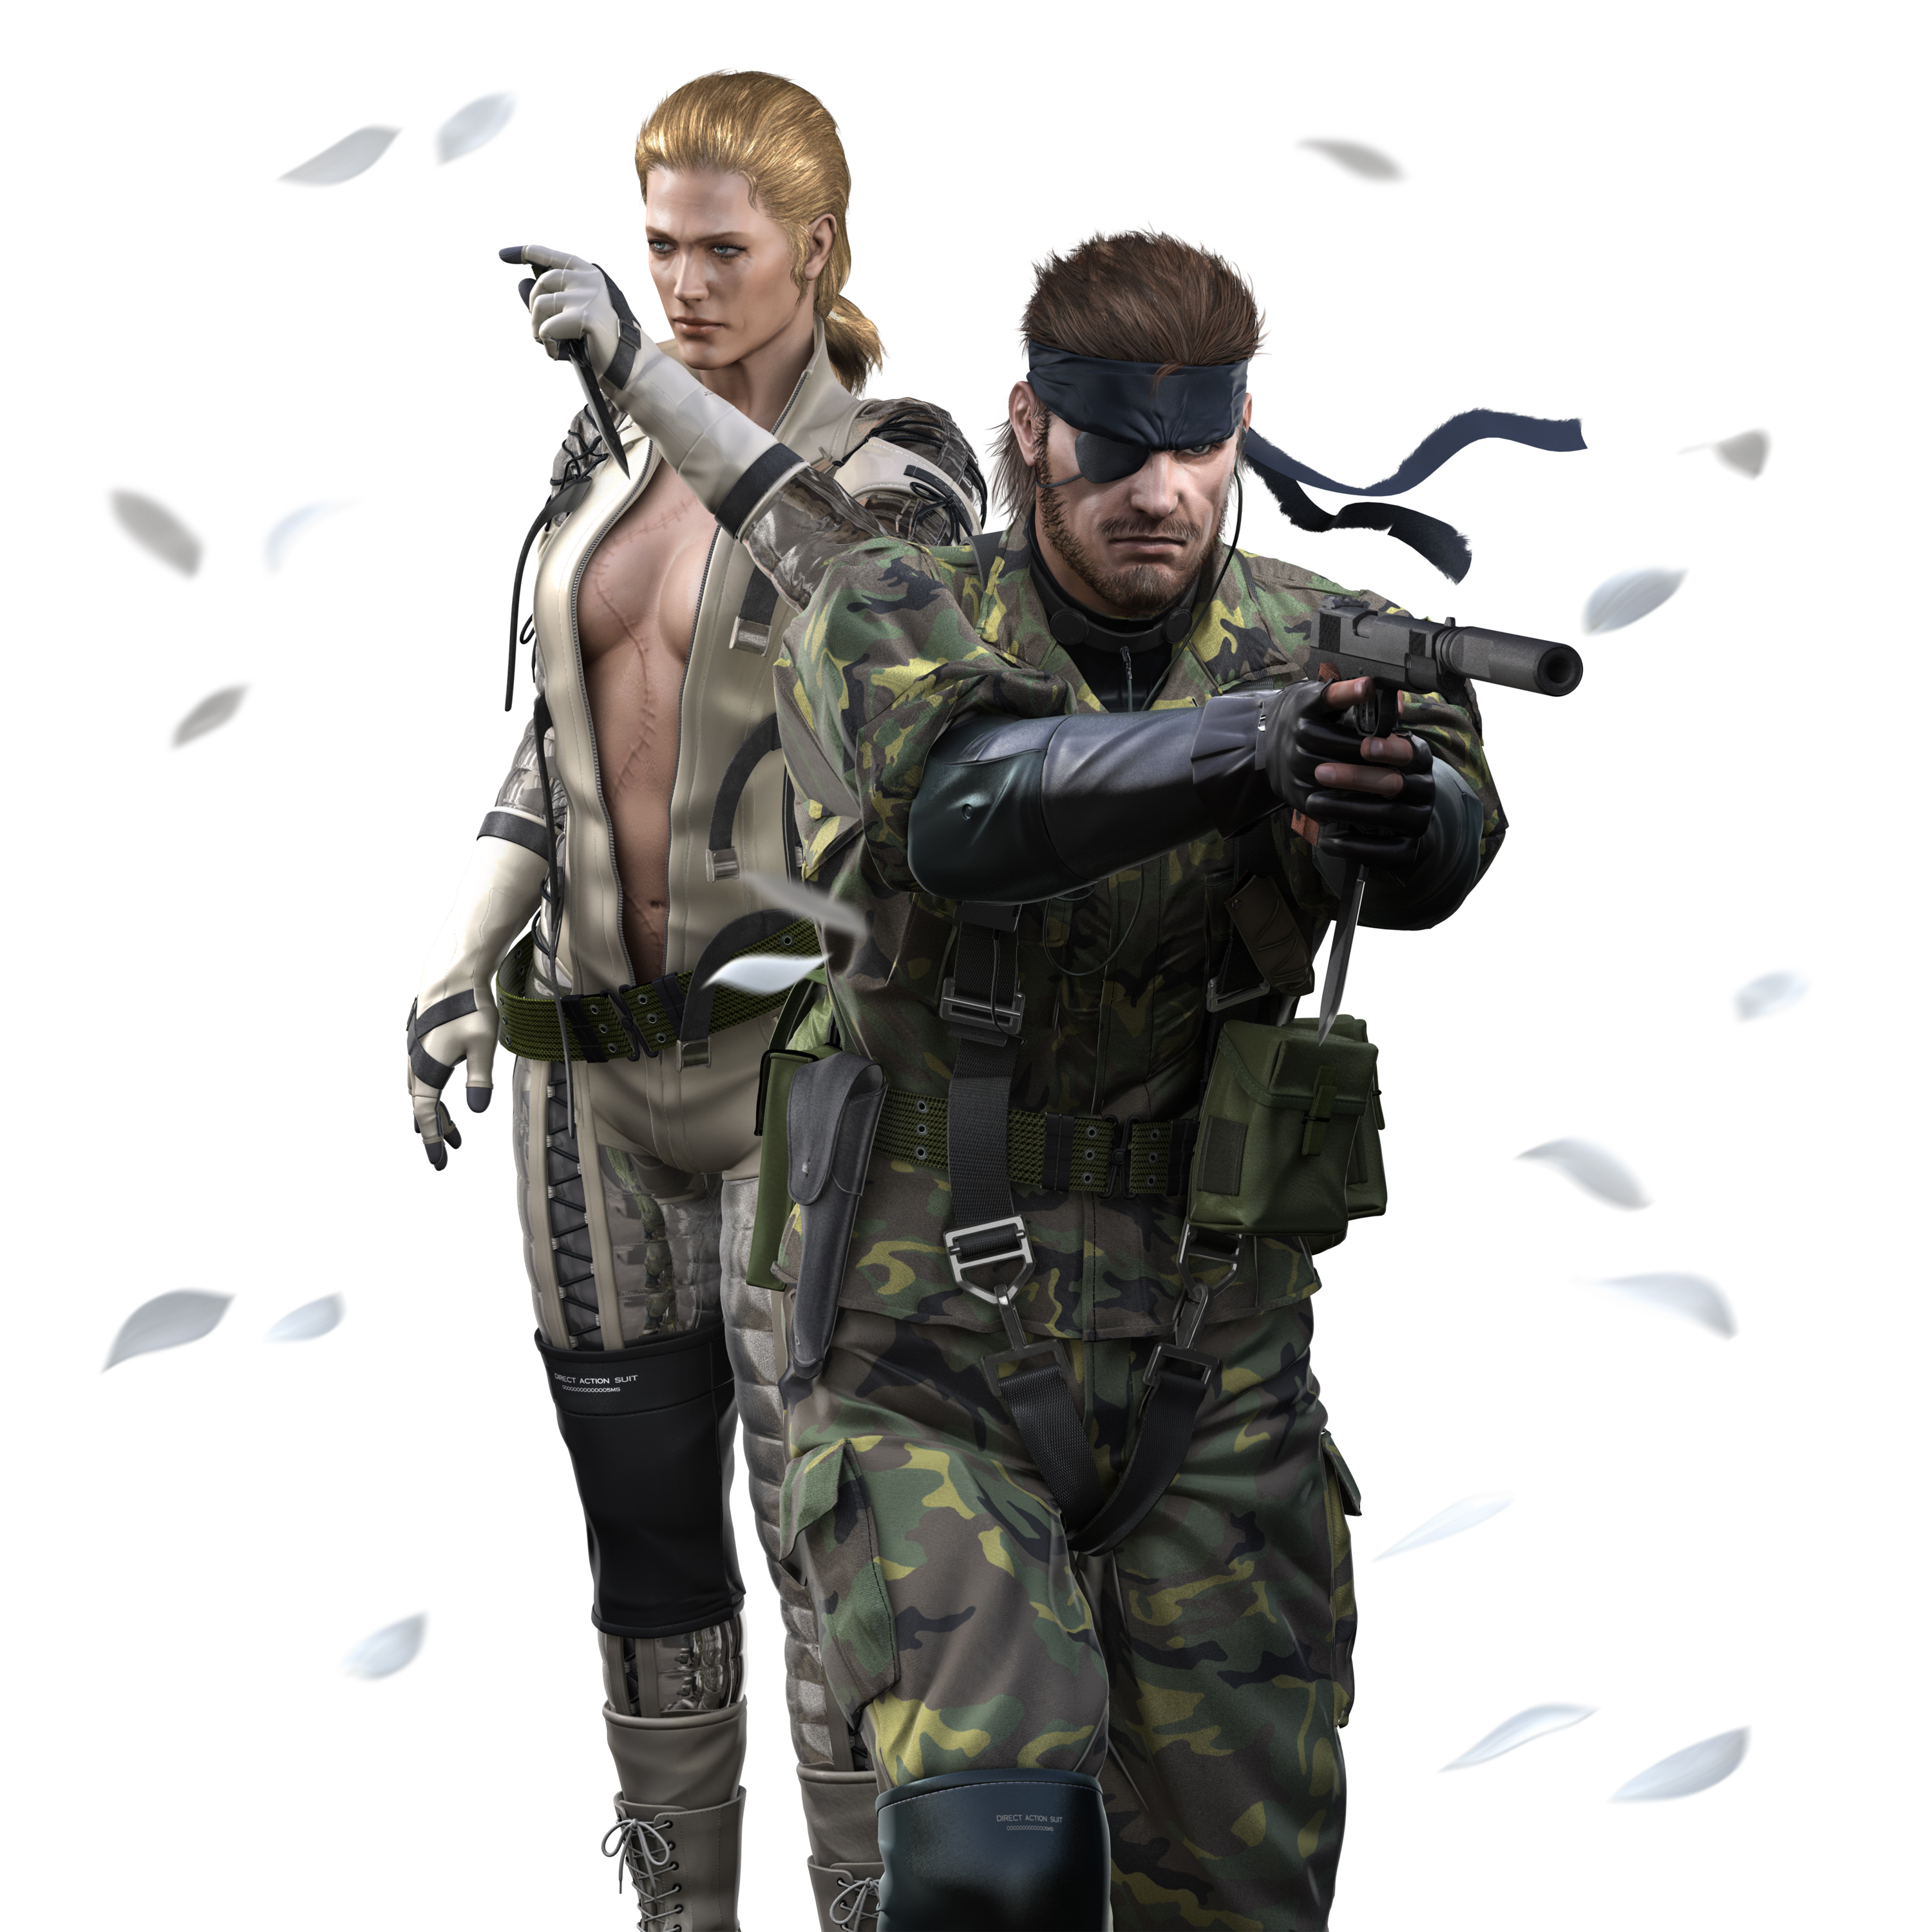 Metal Gear Solid - desktop wallpaper